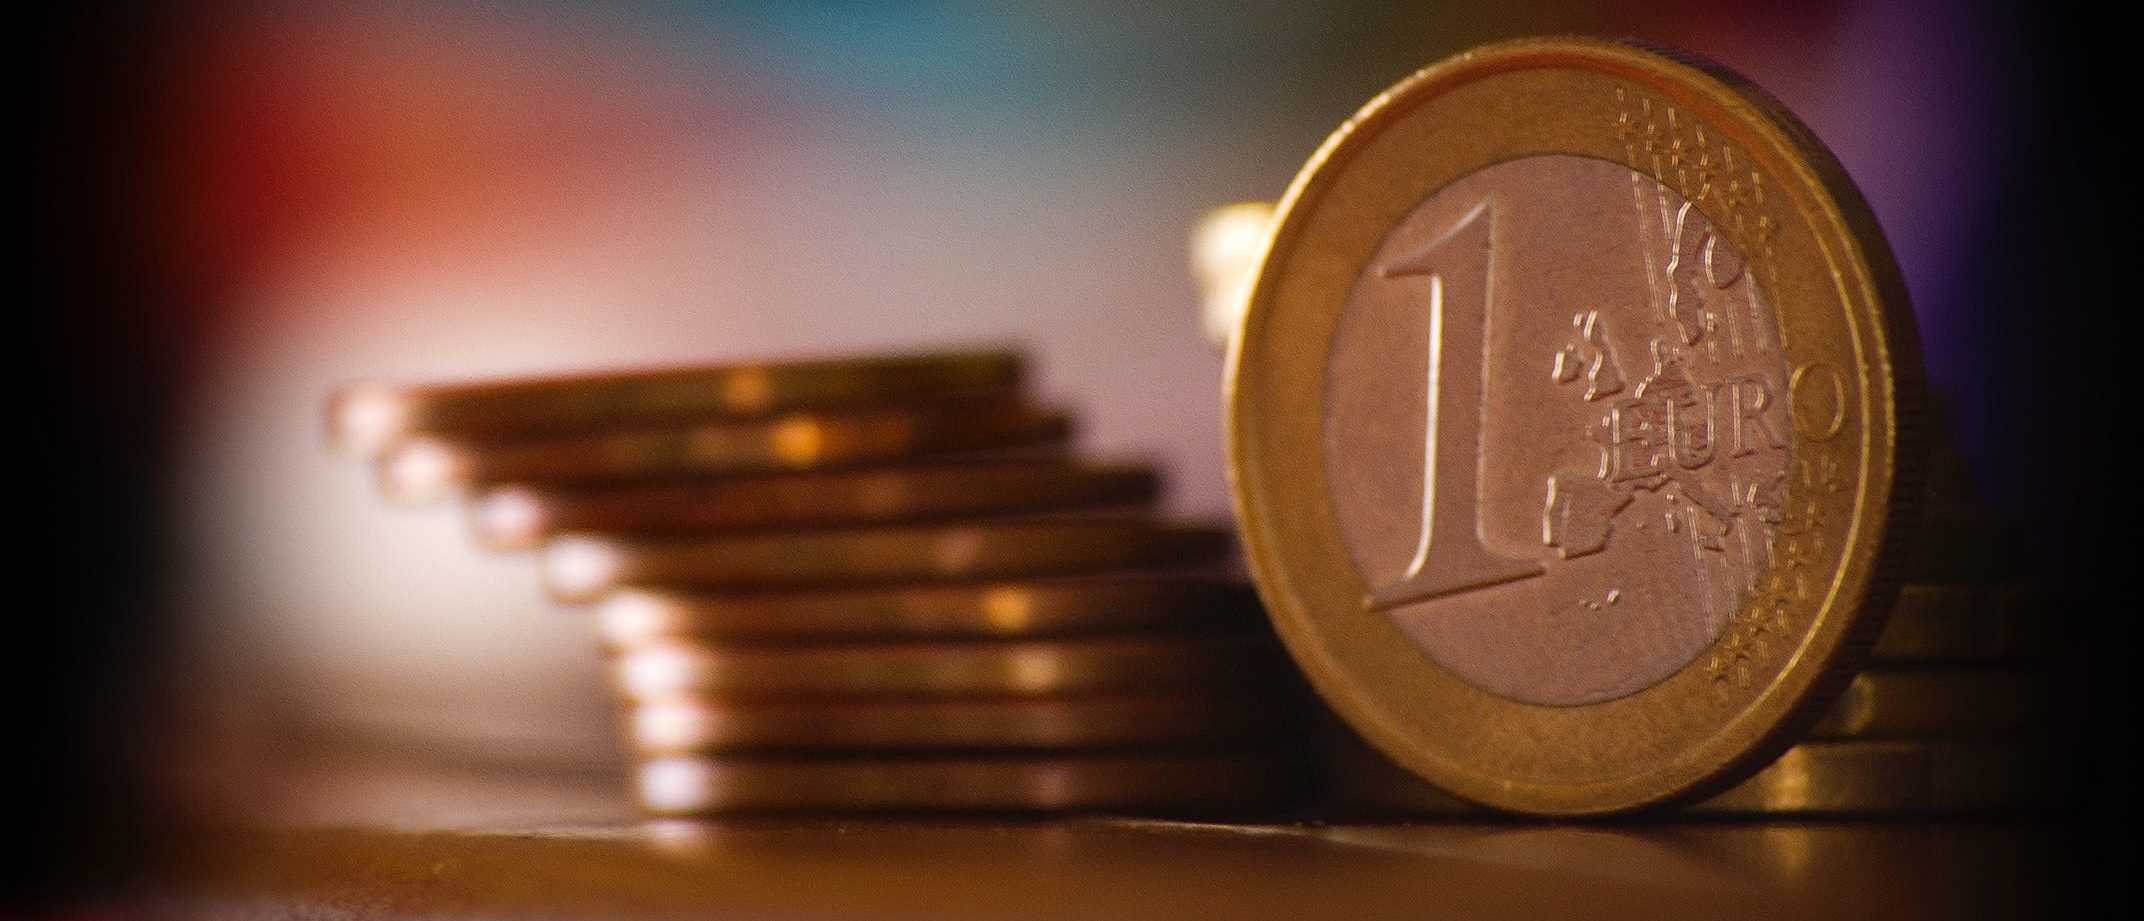 1000 euro in bitcoin investieren)